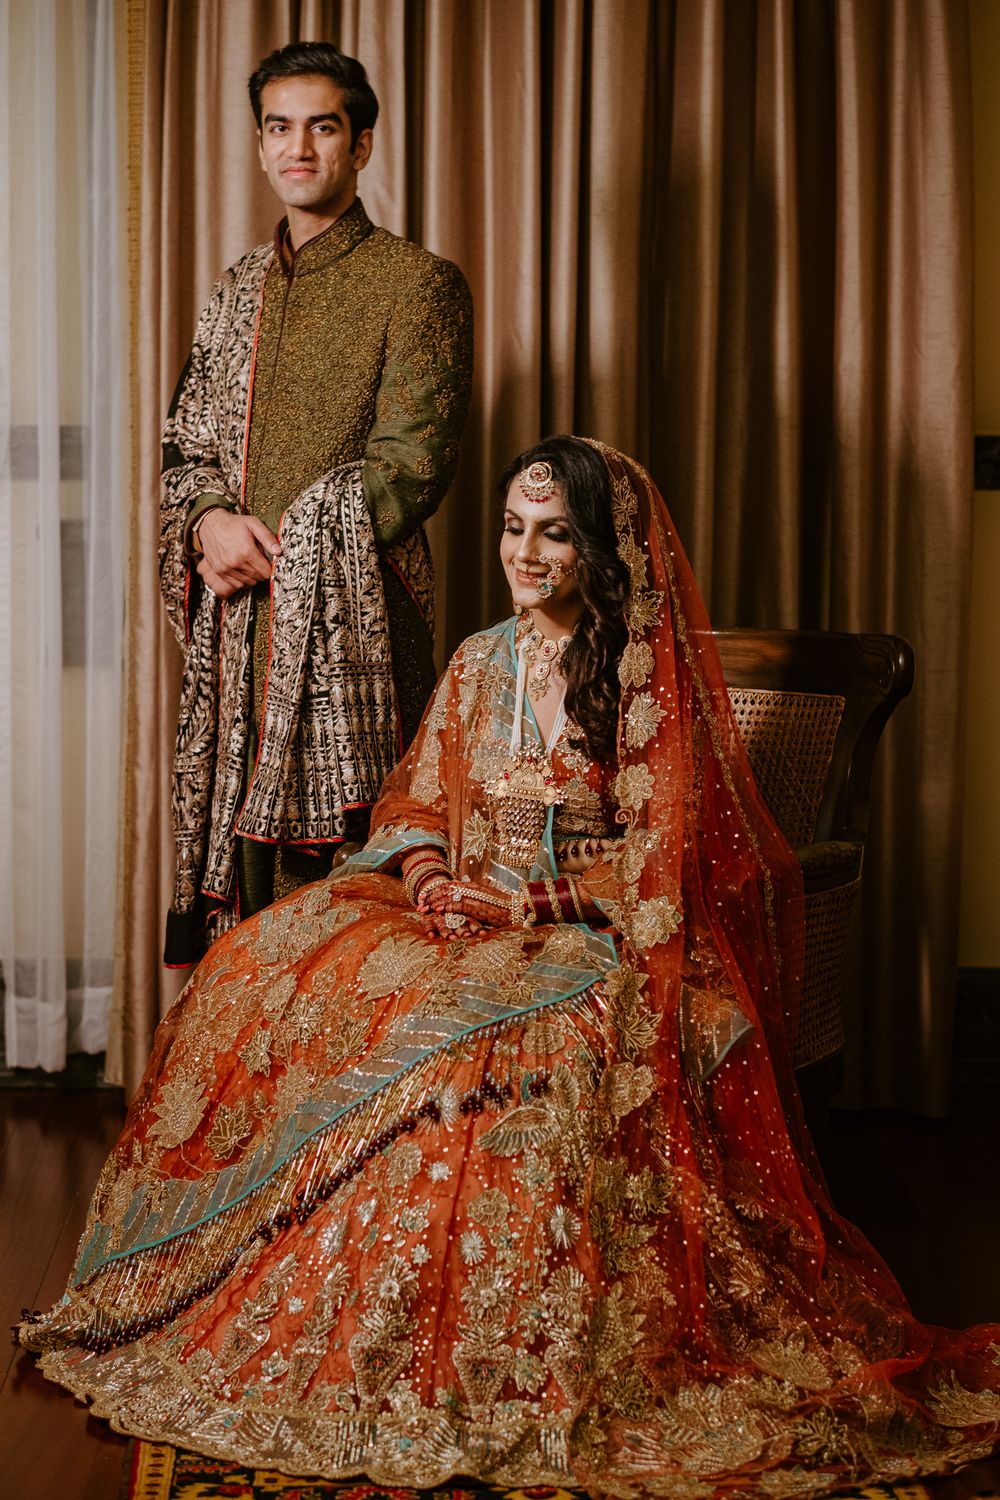 Photo of A royal couple portrait.